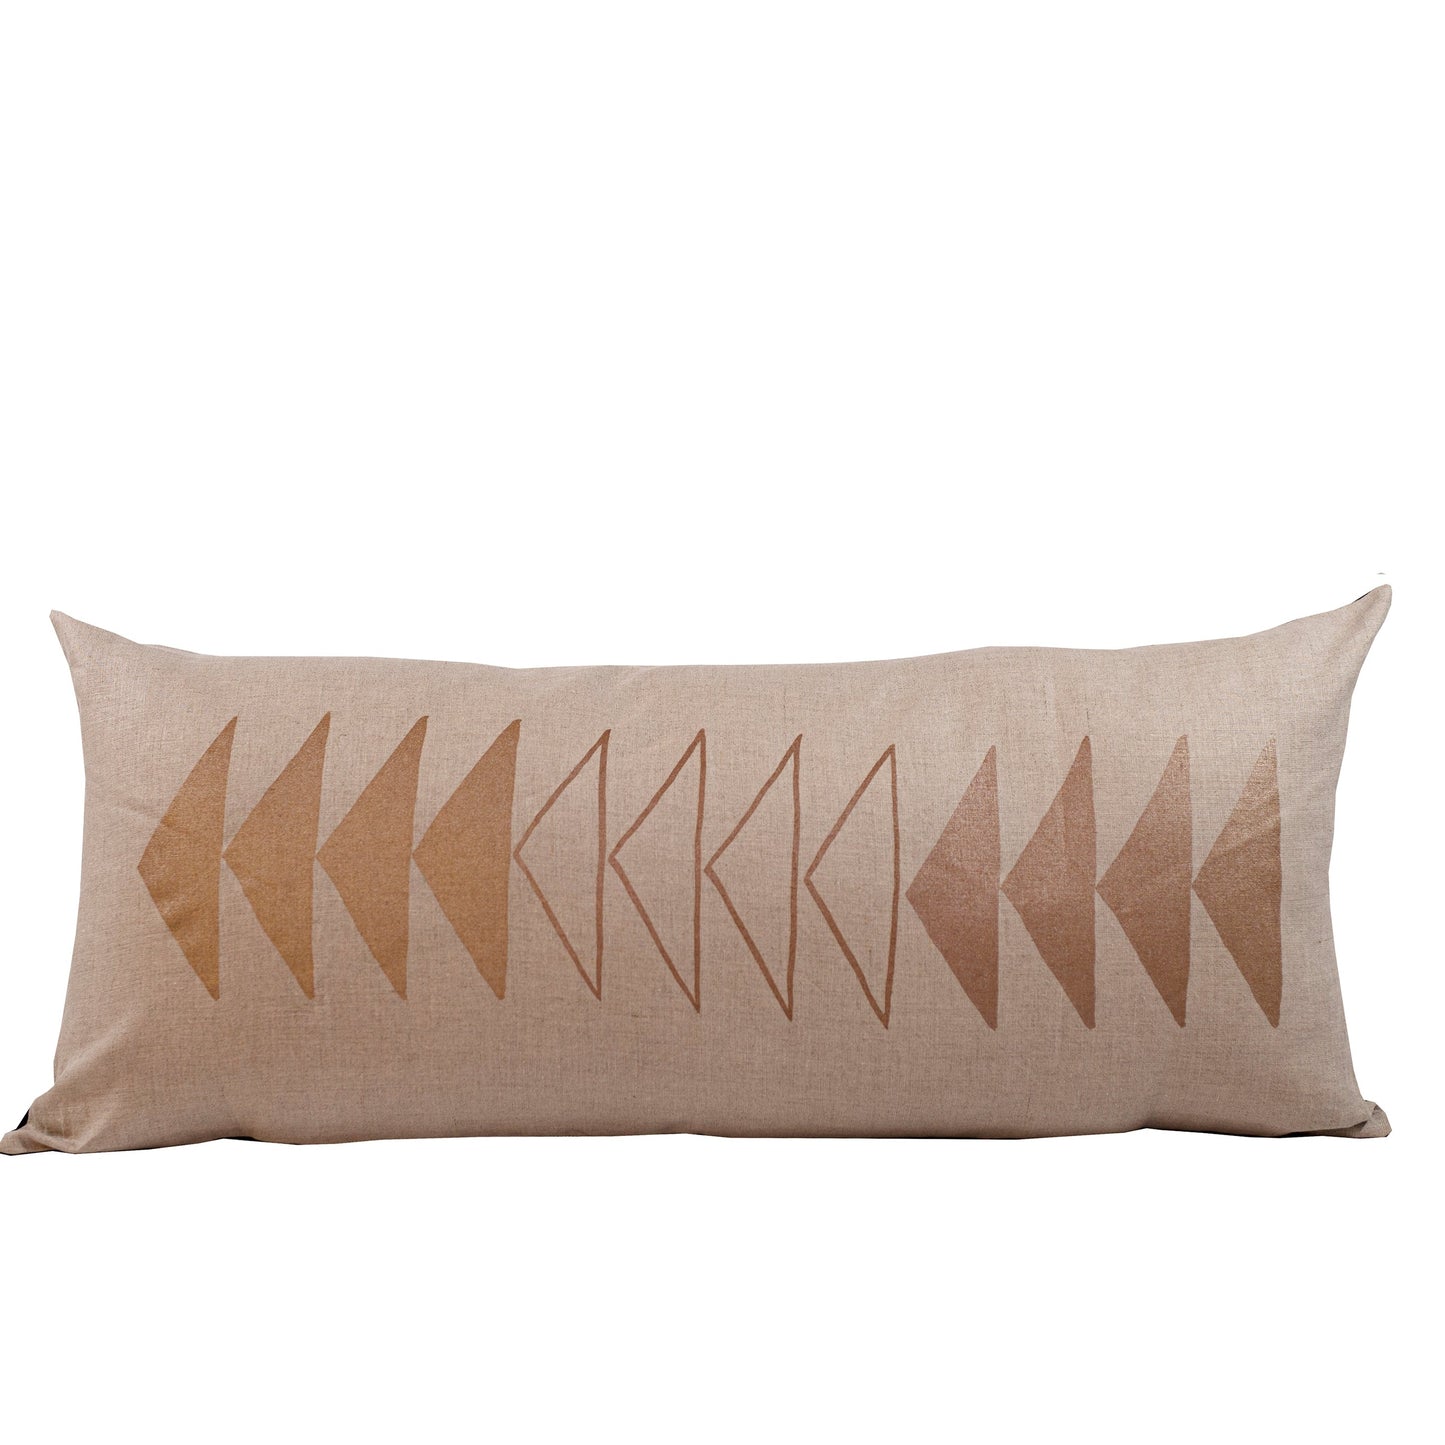 Copper Arrows Long Lumbar Pillow by Indigo Arrows